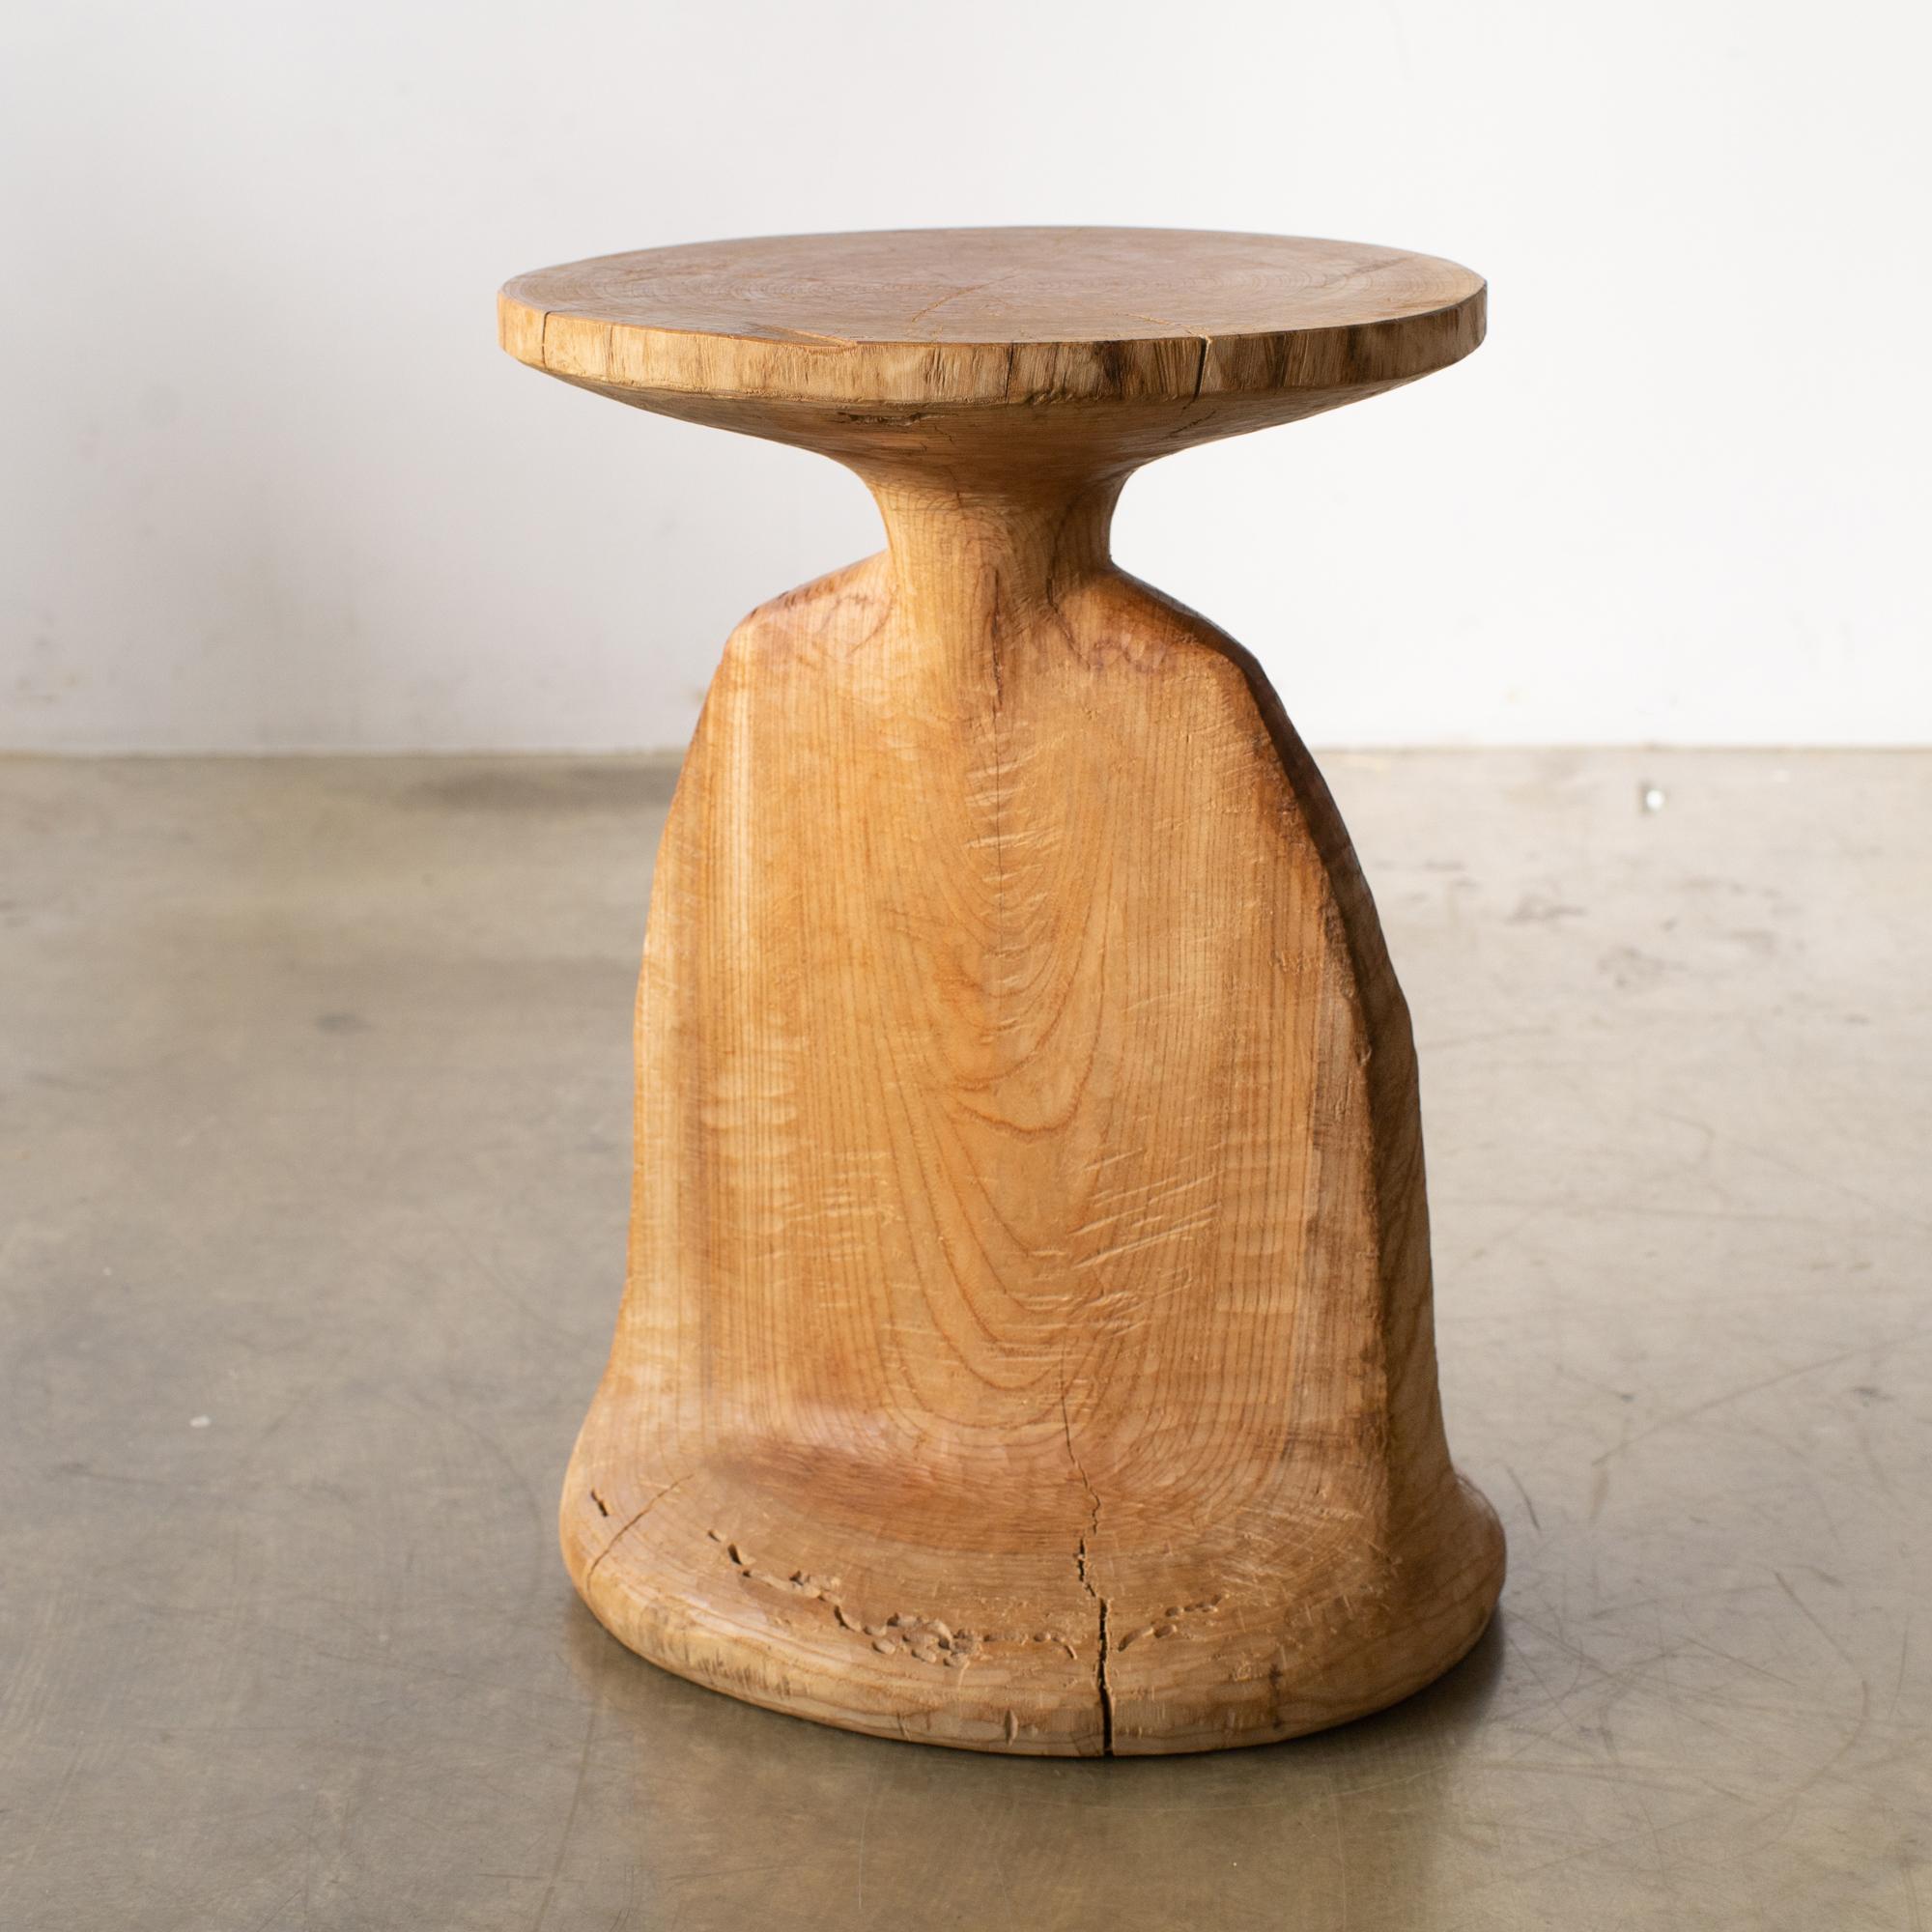 Nom : Zen
Tabouret sculptural de Zougei, meubles sculptés
MATERIAL : Zelkova
Cette œuvre est sculptée dans du bois à l'aide de plusieurs types de tronçonneuses.
La plupart des bois utilisés pour les œuvres de Nishimura ne peuvent servir à rien,